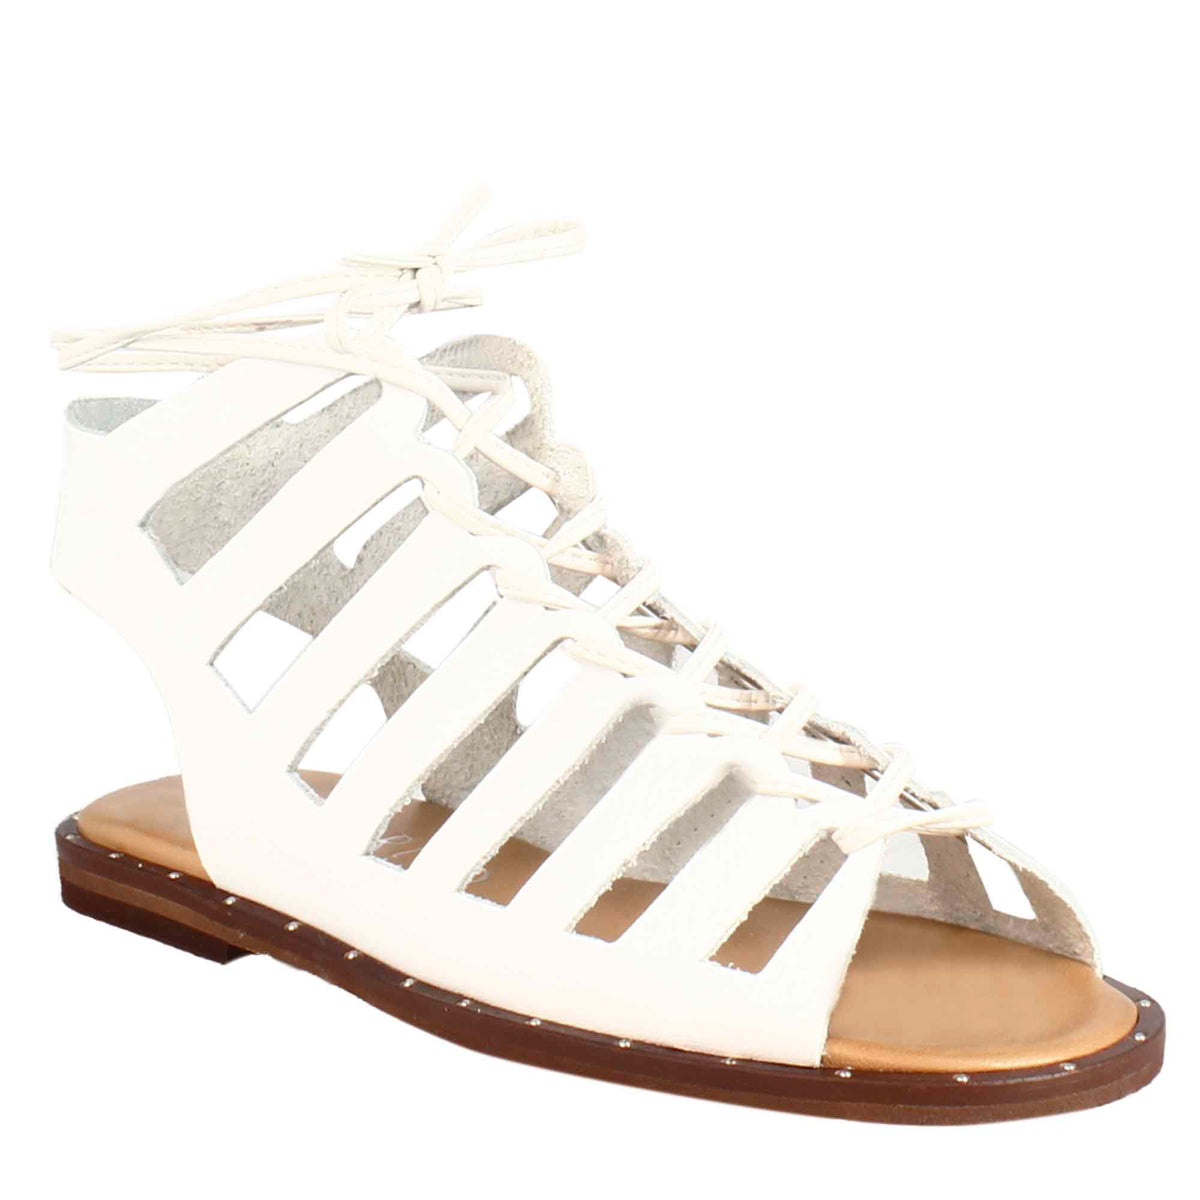 Sandalo gladiatore da donna con lacci fatti a mano in pelle bianca